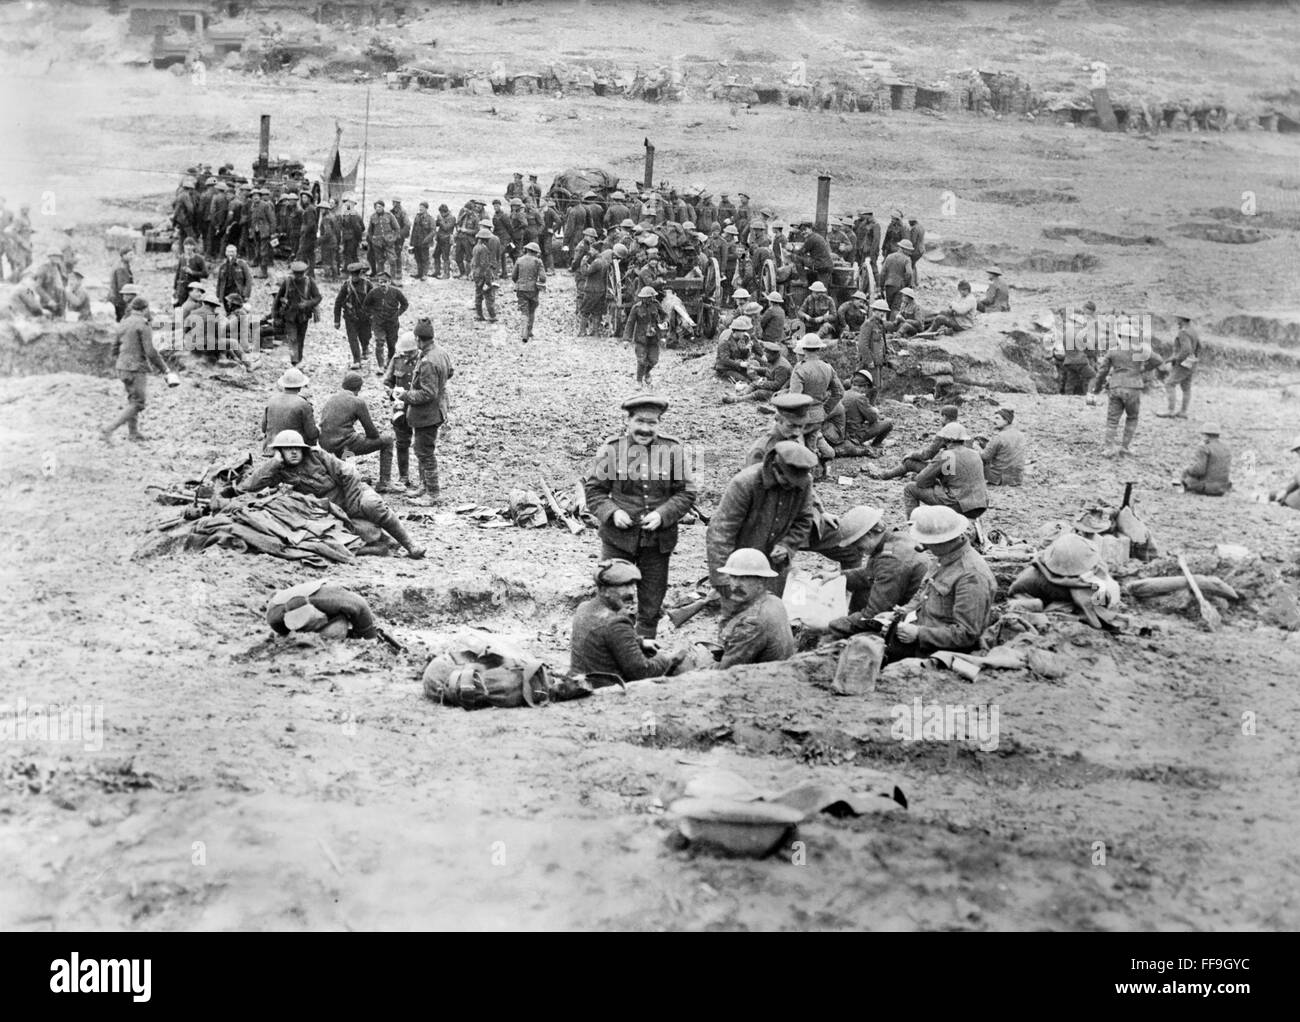 Les troupes britanniques sur le terrain d'une cuisine et d'étangs dans 'Sausage Valley', Somme, France, pendant la Première Guerre mondiale. Photo de Bain News Service c. Mai 1917 Banque D'Images